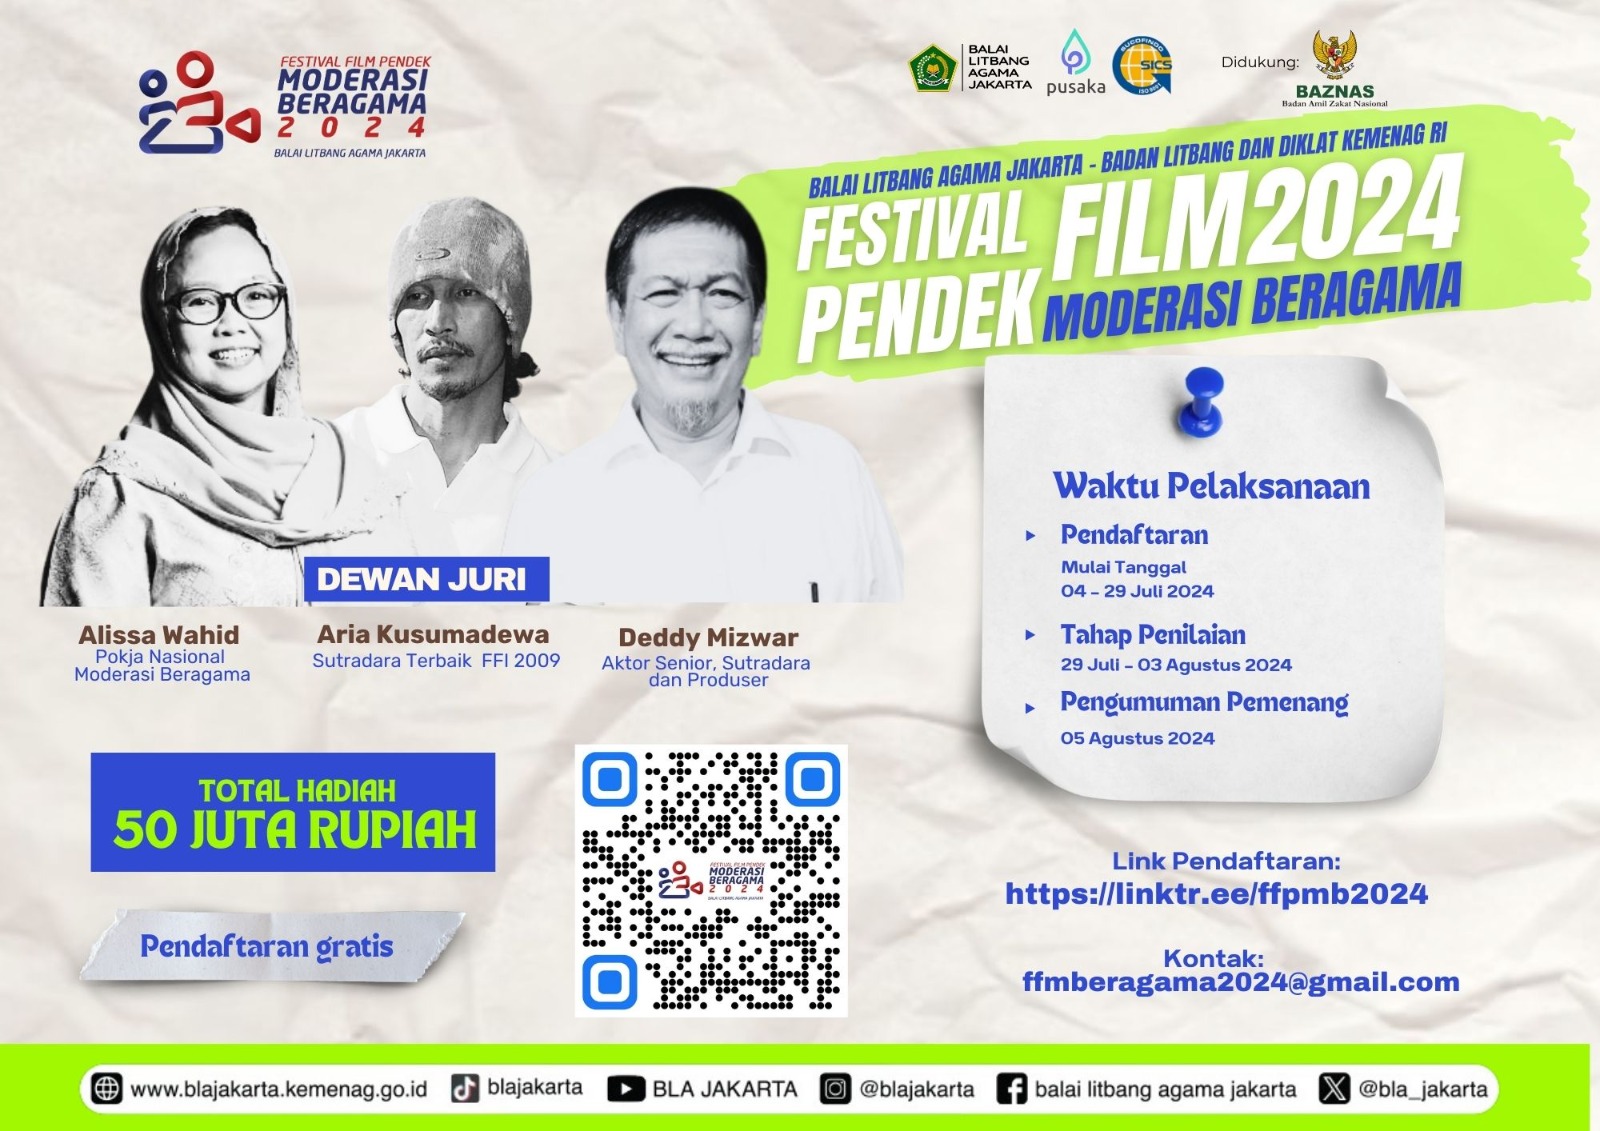 Balai Litbang Agama Jakarta Kembali Gelar Festival Film Pendek Moderasi Beragama 2024